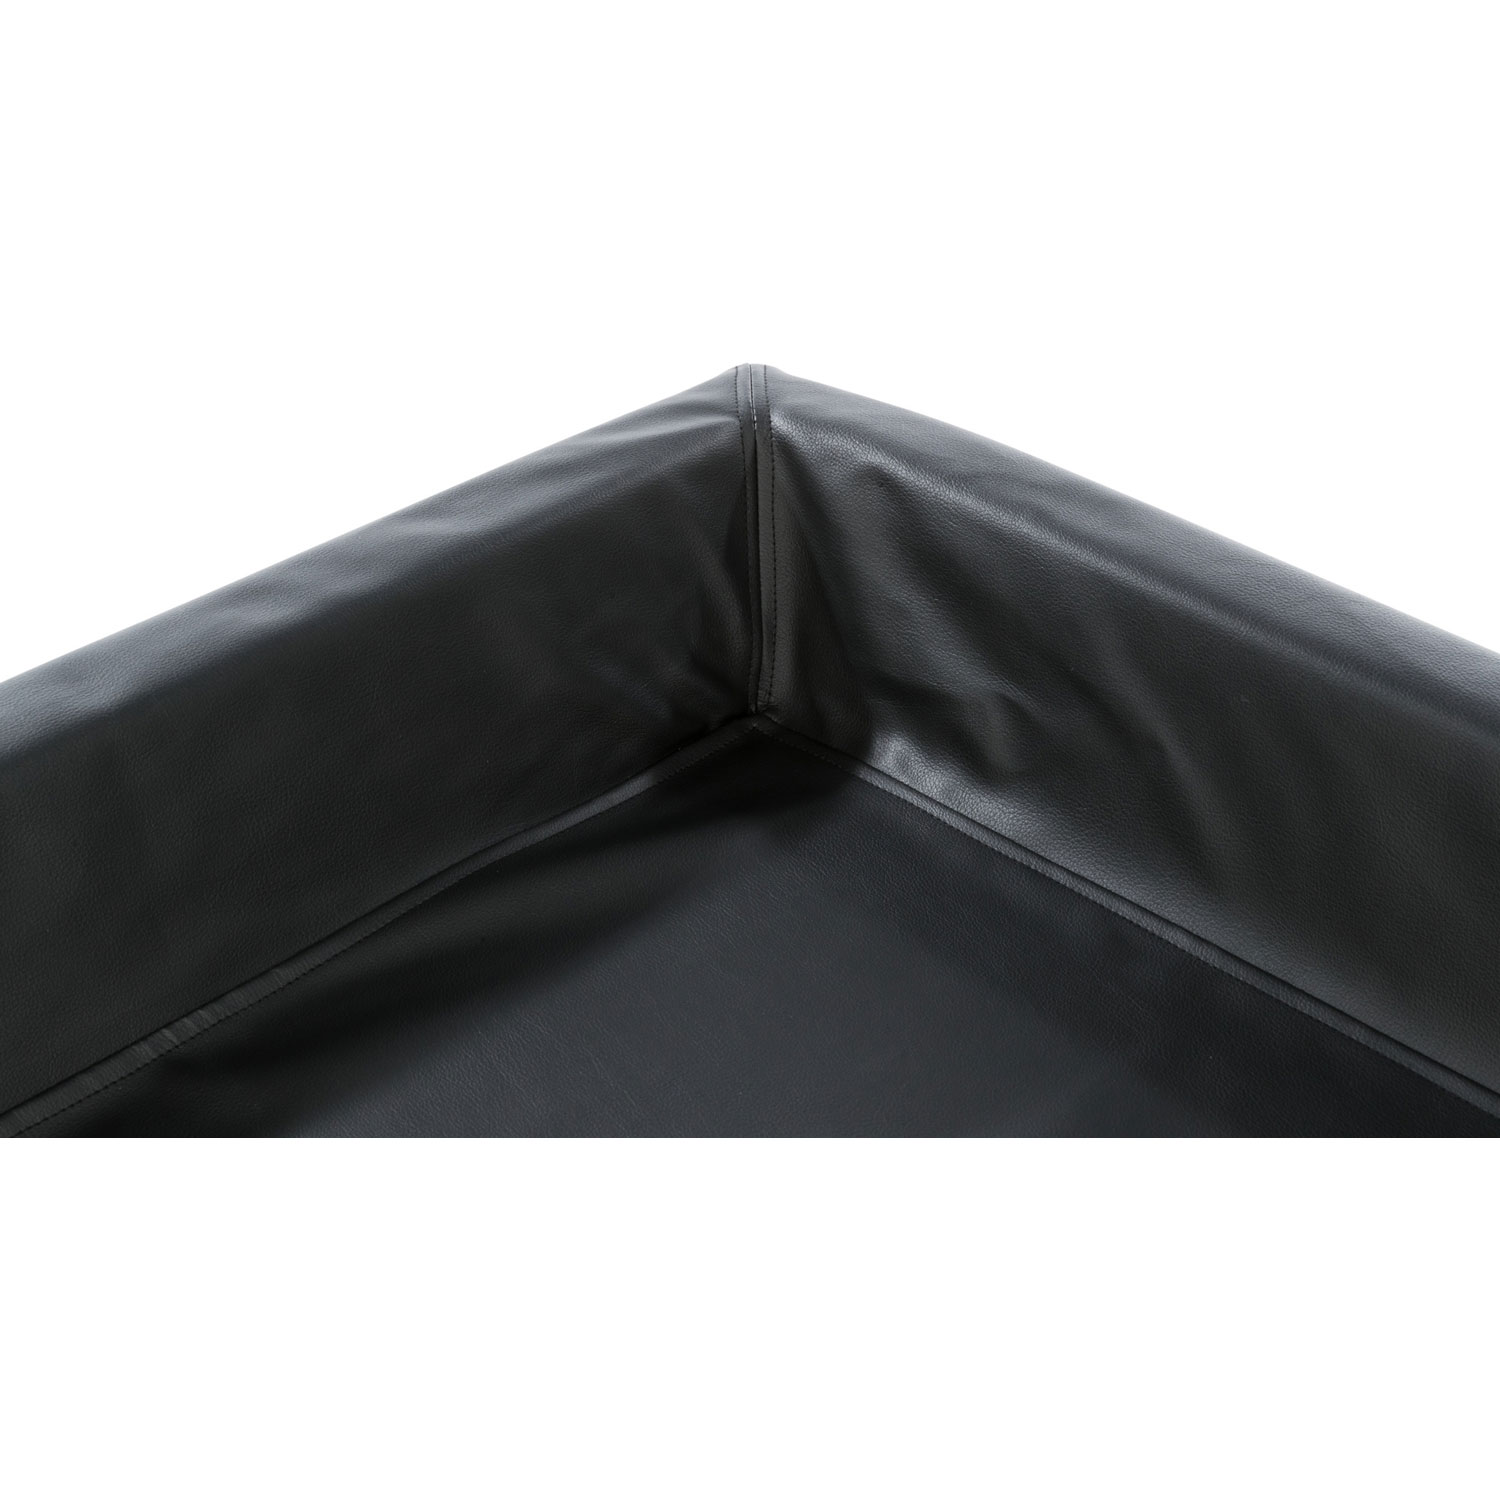 Cama para Coche, 80×60cm, Negro - B2B - Grupo Trixder